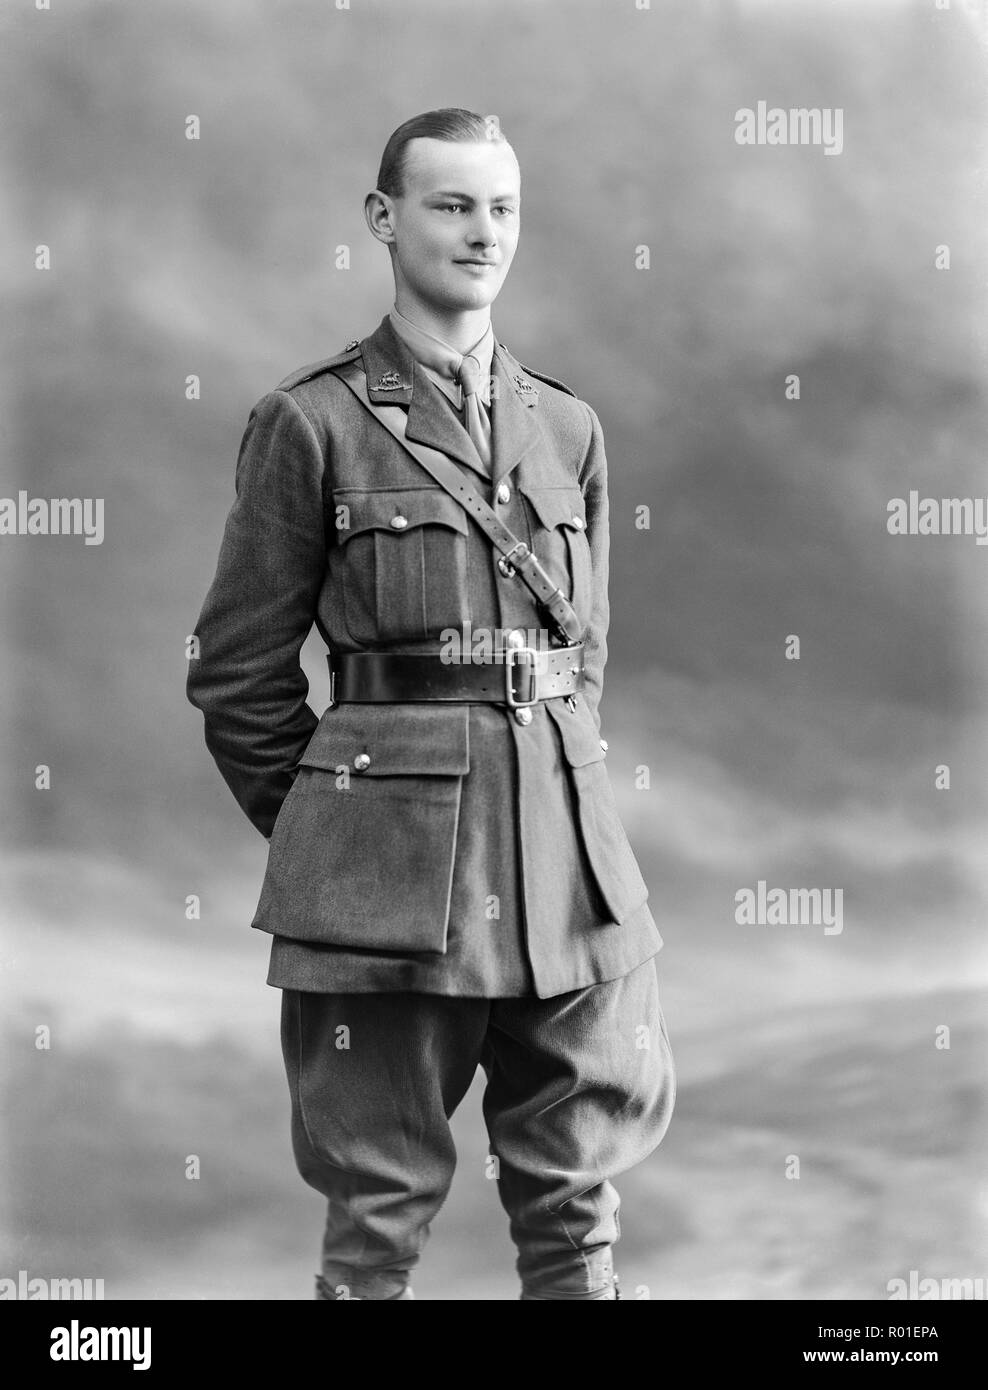 Studio Photographie prise le 11 septembre 1916 montrant le sous-Lieutenant F. L. Simmons, de l'imprimeur de la West Surrey Regiment, en uniforme de l'armée complète. Soldat de la première guerre mondiale. Banque D'Images